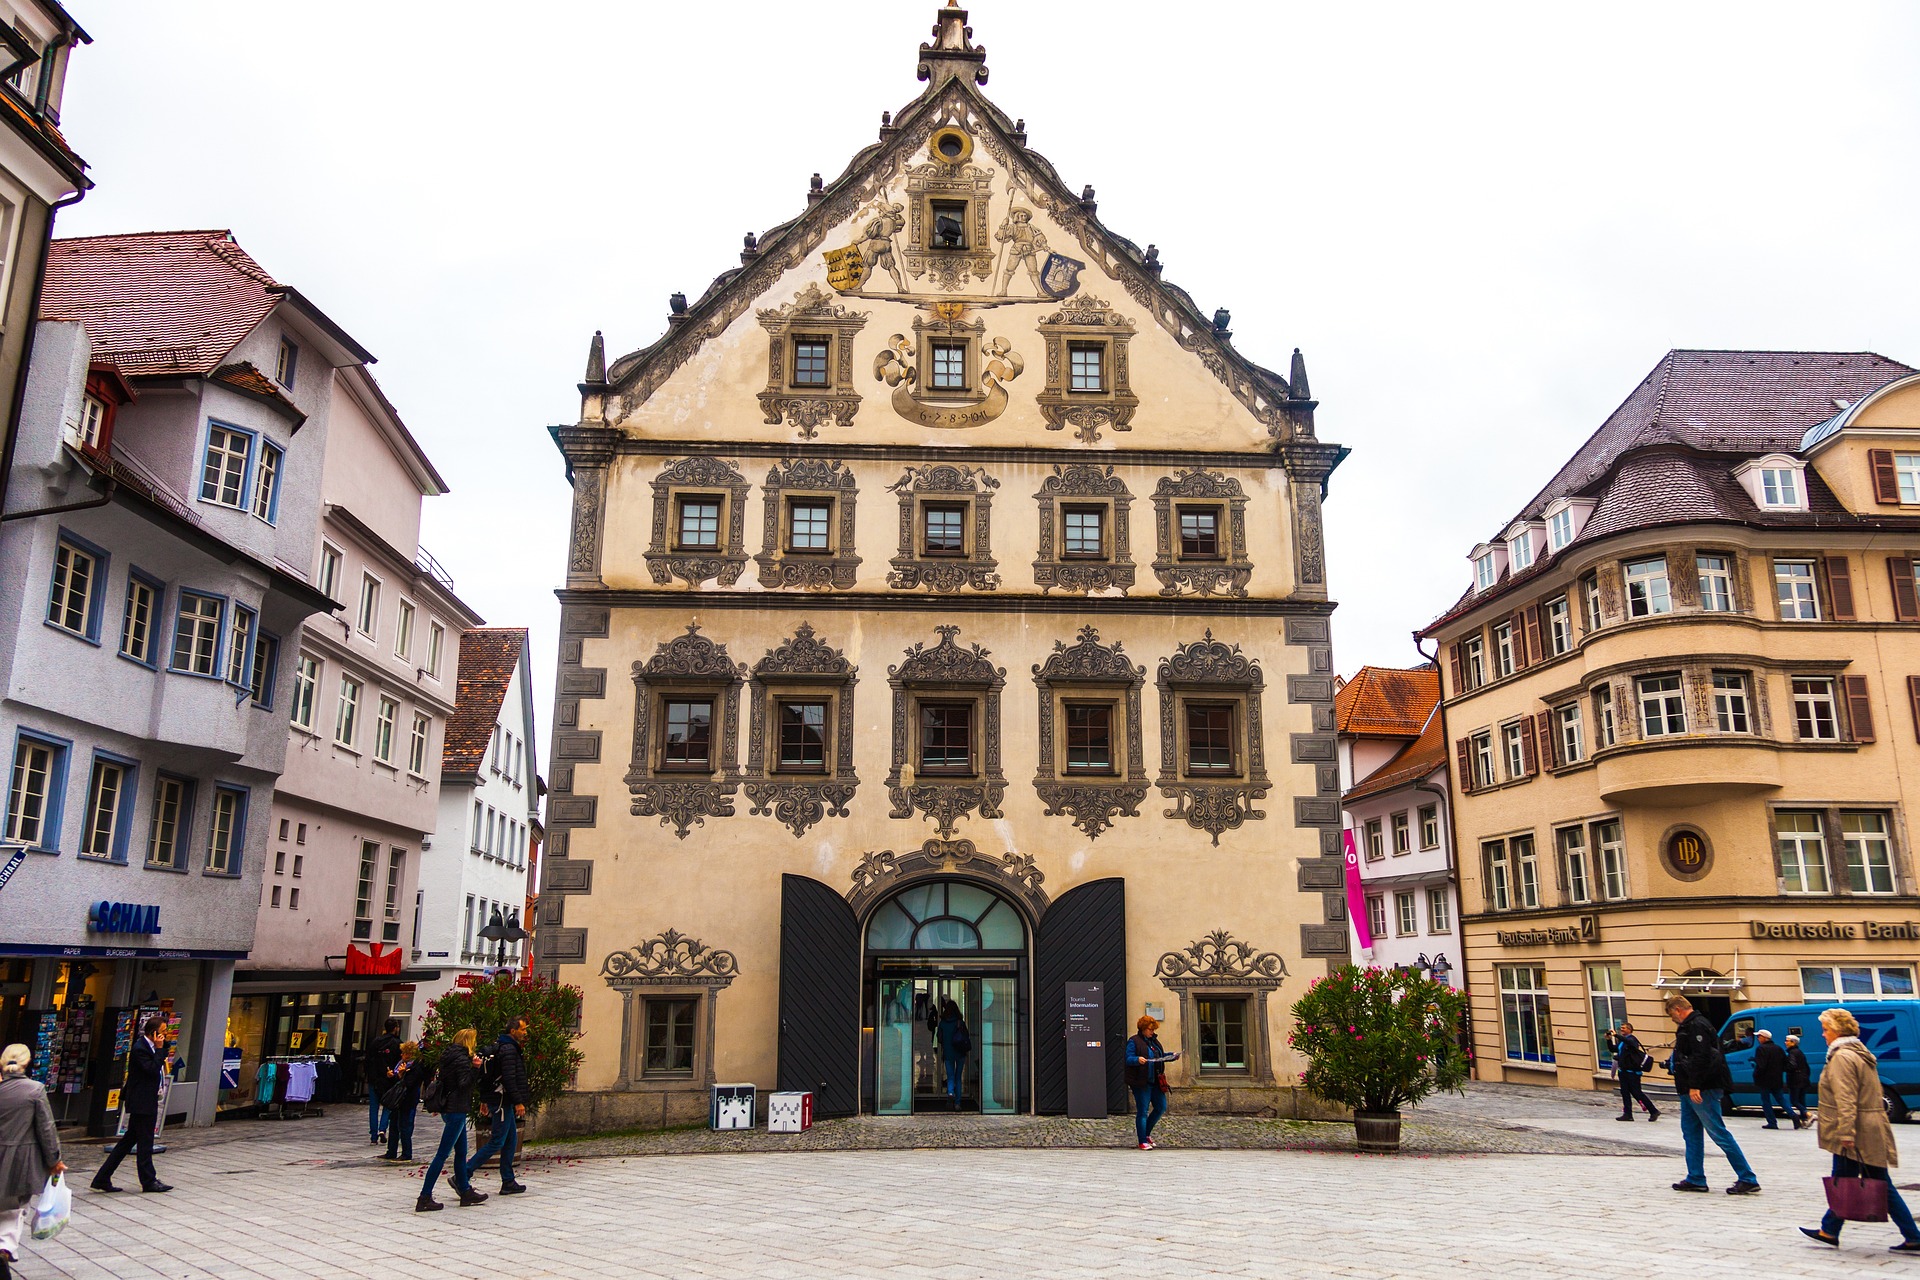 Wlan wird nachts in Ravensburg ausgeschaltet. Bild von Alfred Derks auf Pixabay